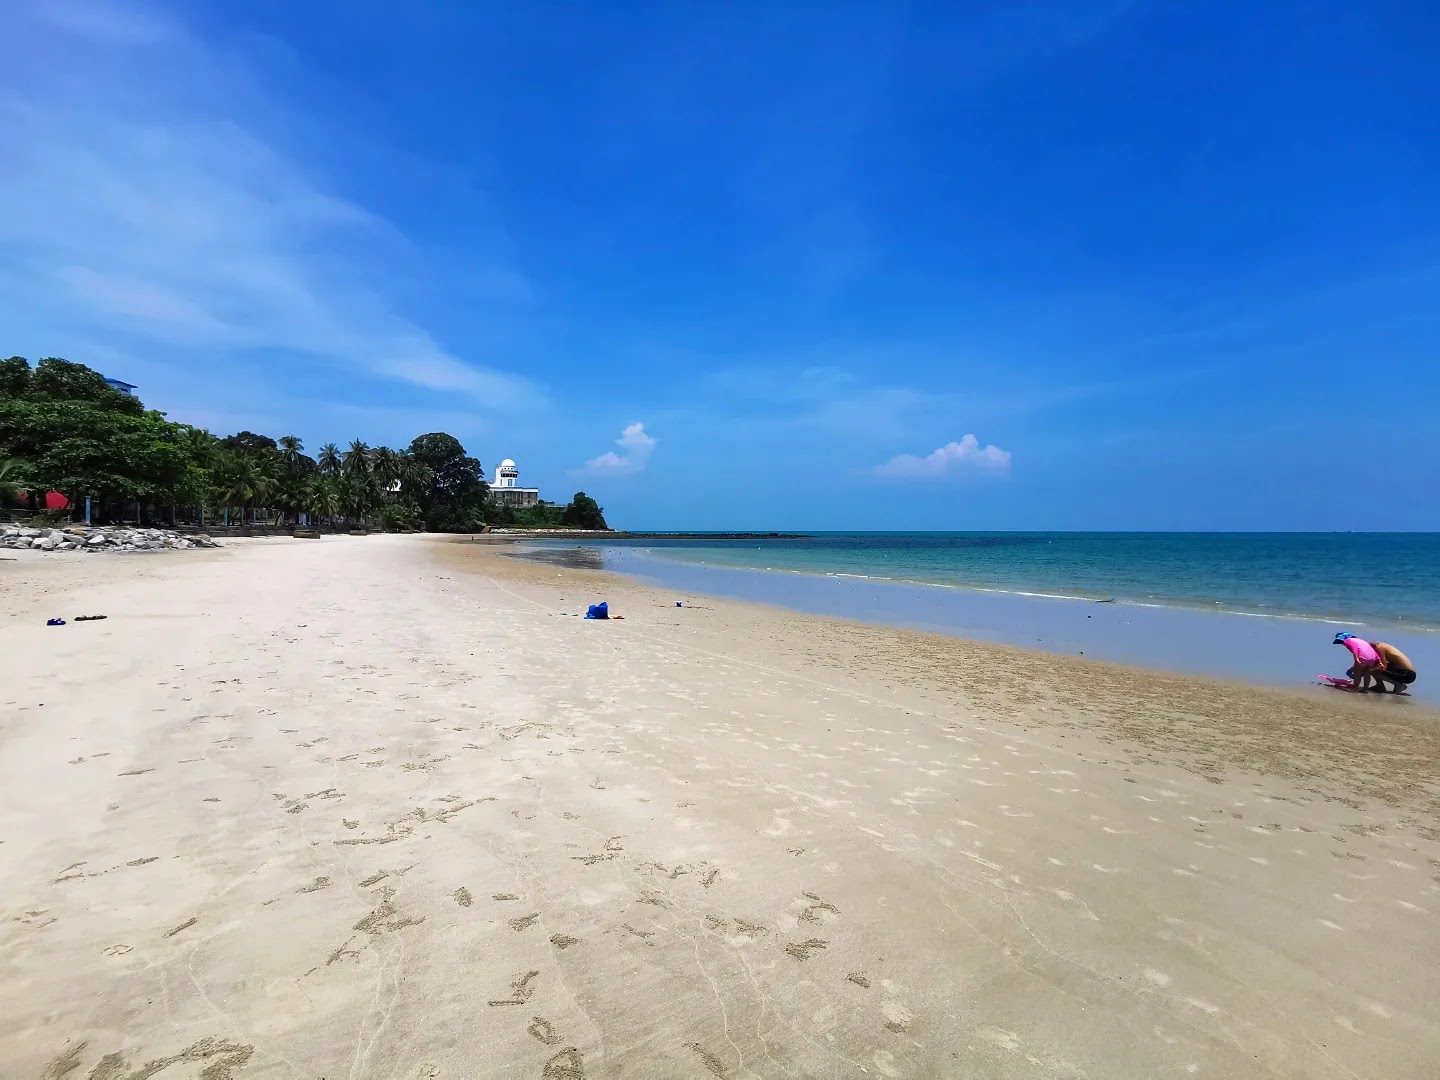 Port Dickson Beach'in fotoğrafı parlak ince kum yüzey ile